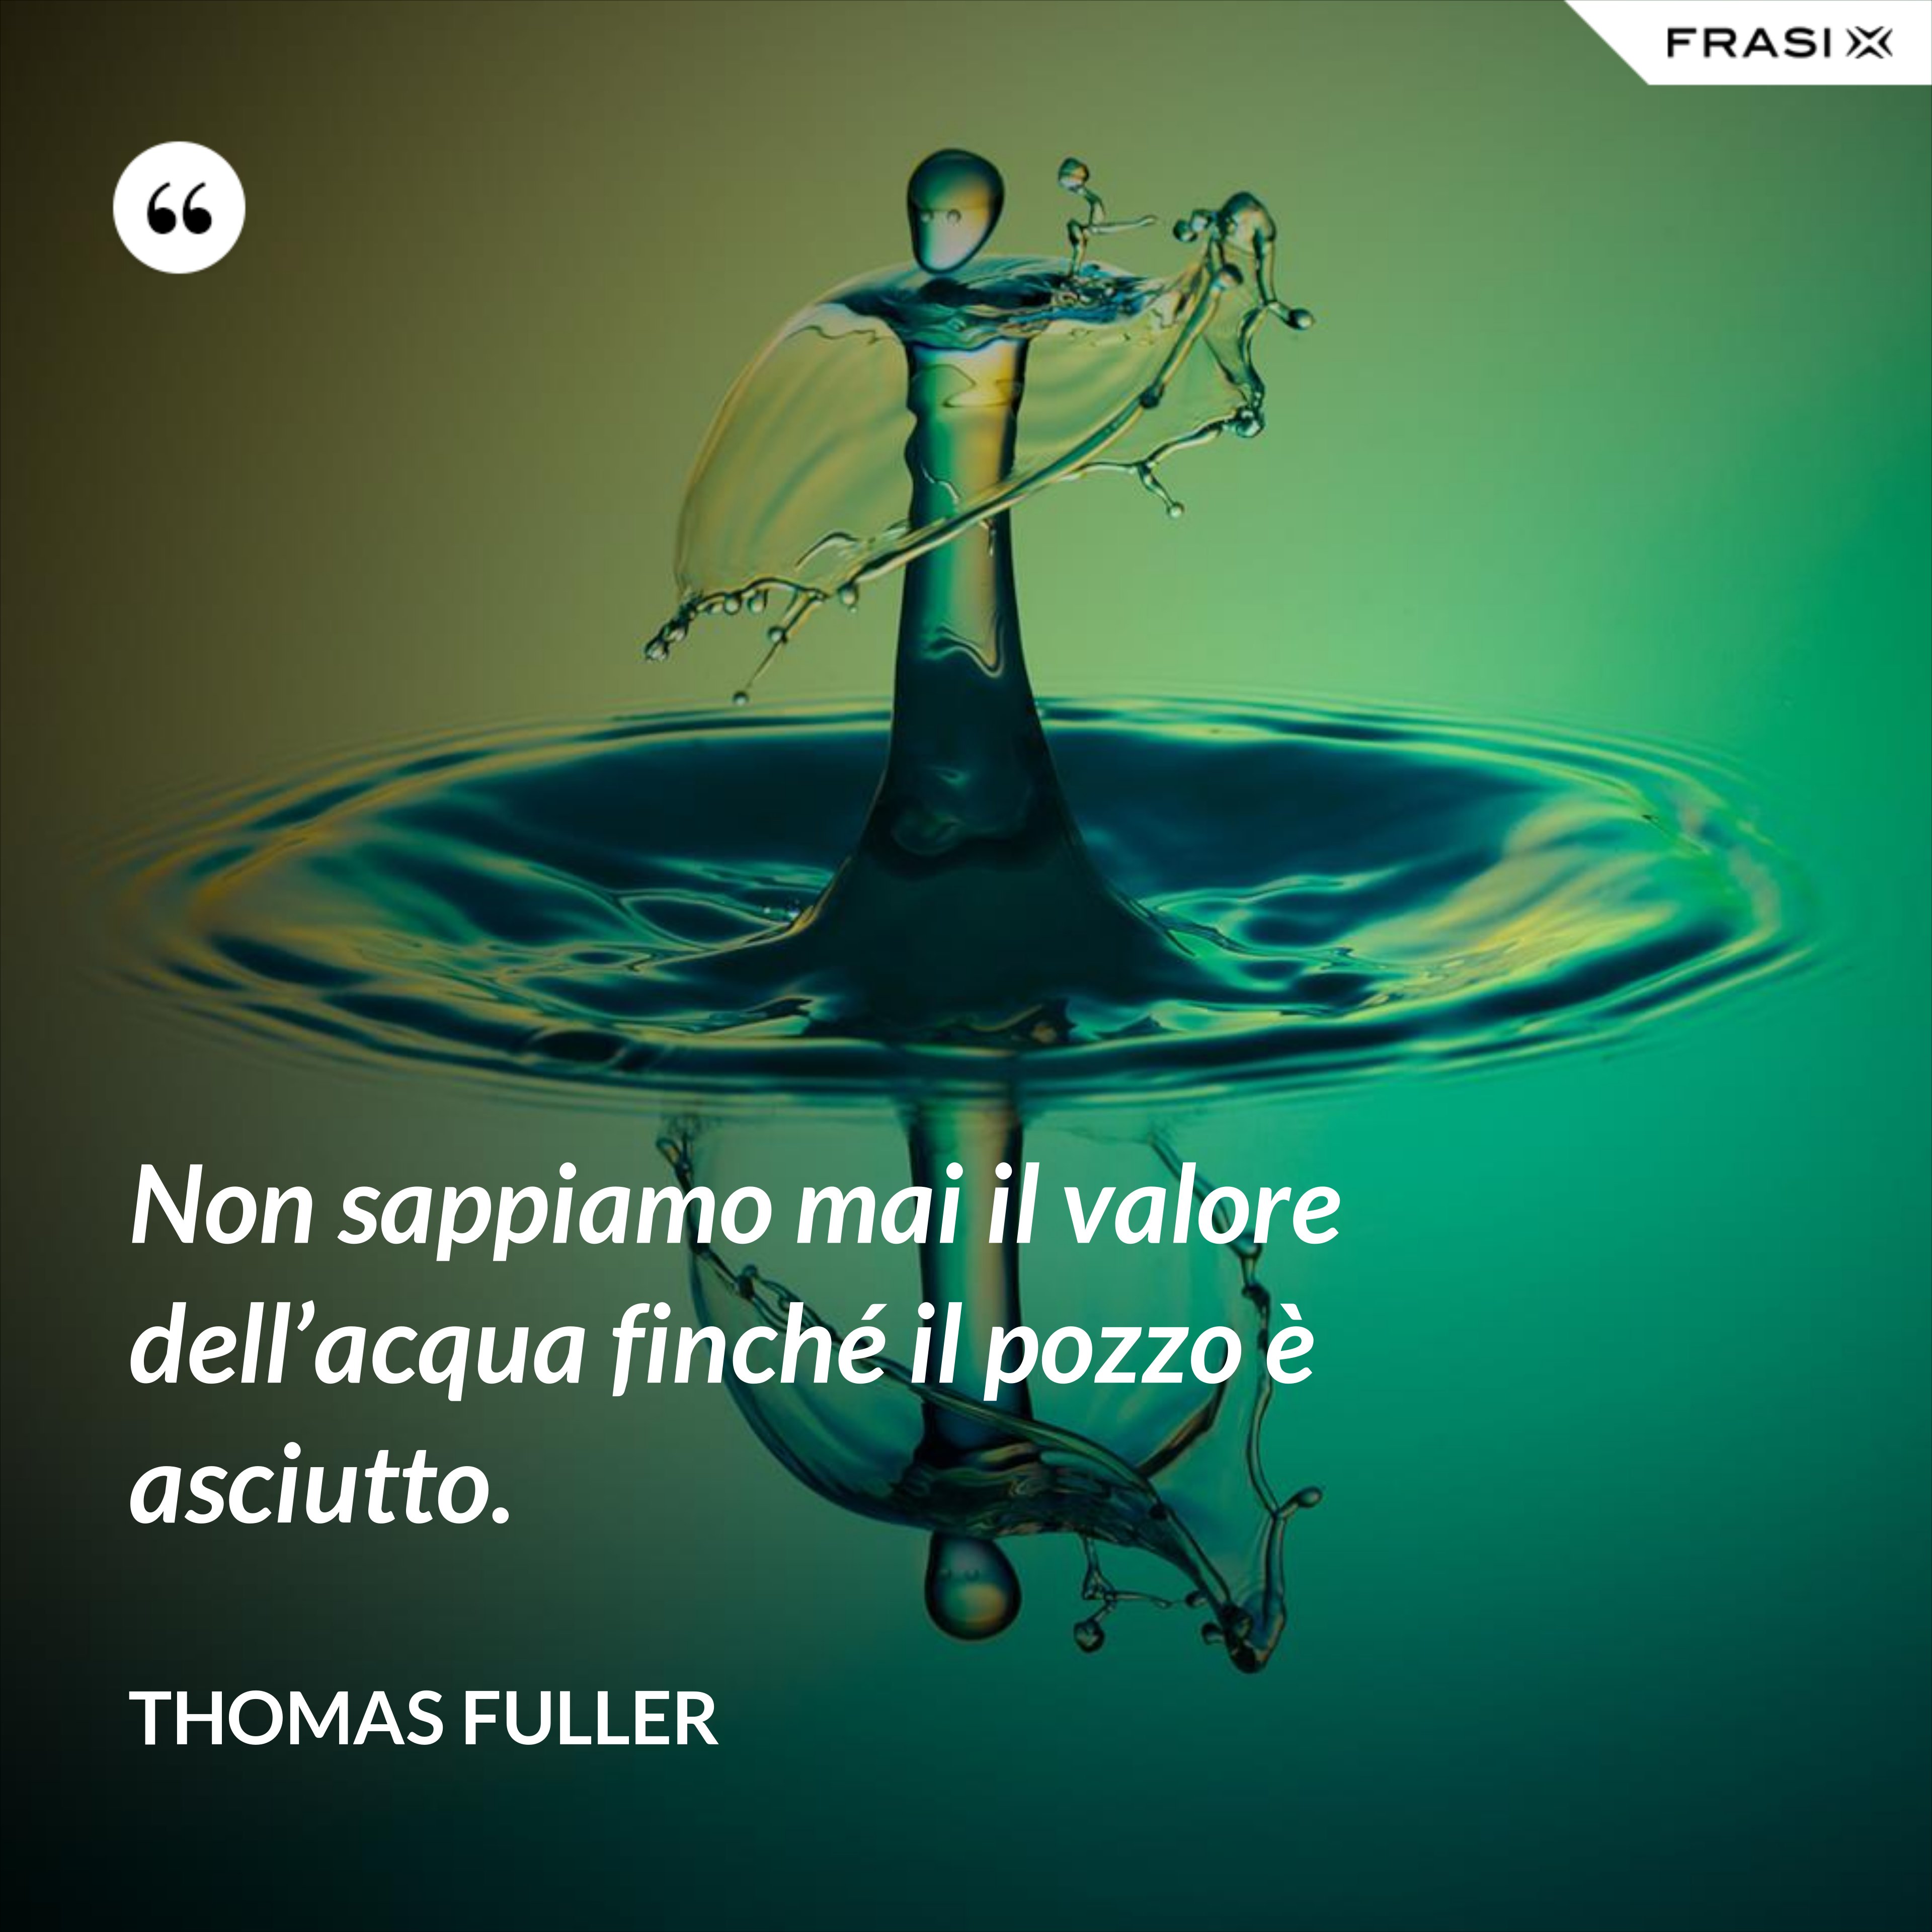 Non sappiamo mai il valore dell’acqua finché il pozzo è asciutto. - Thomas Fuller